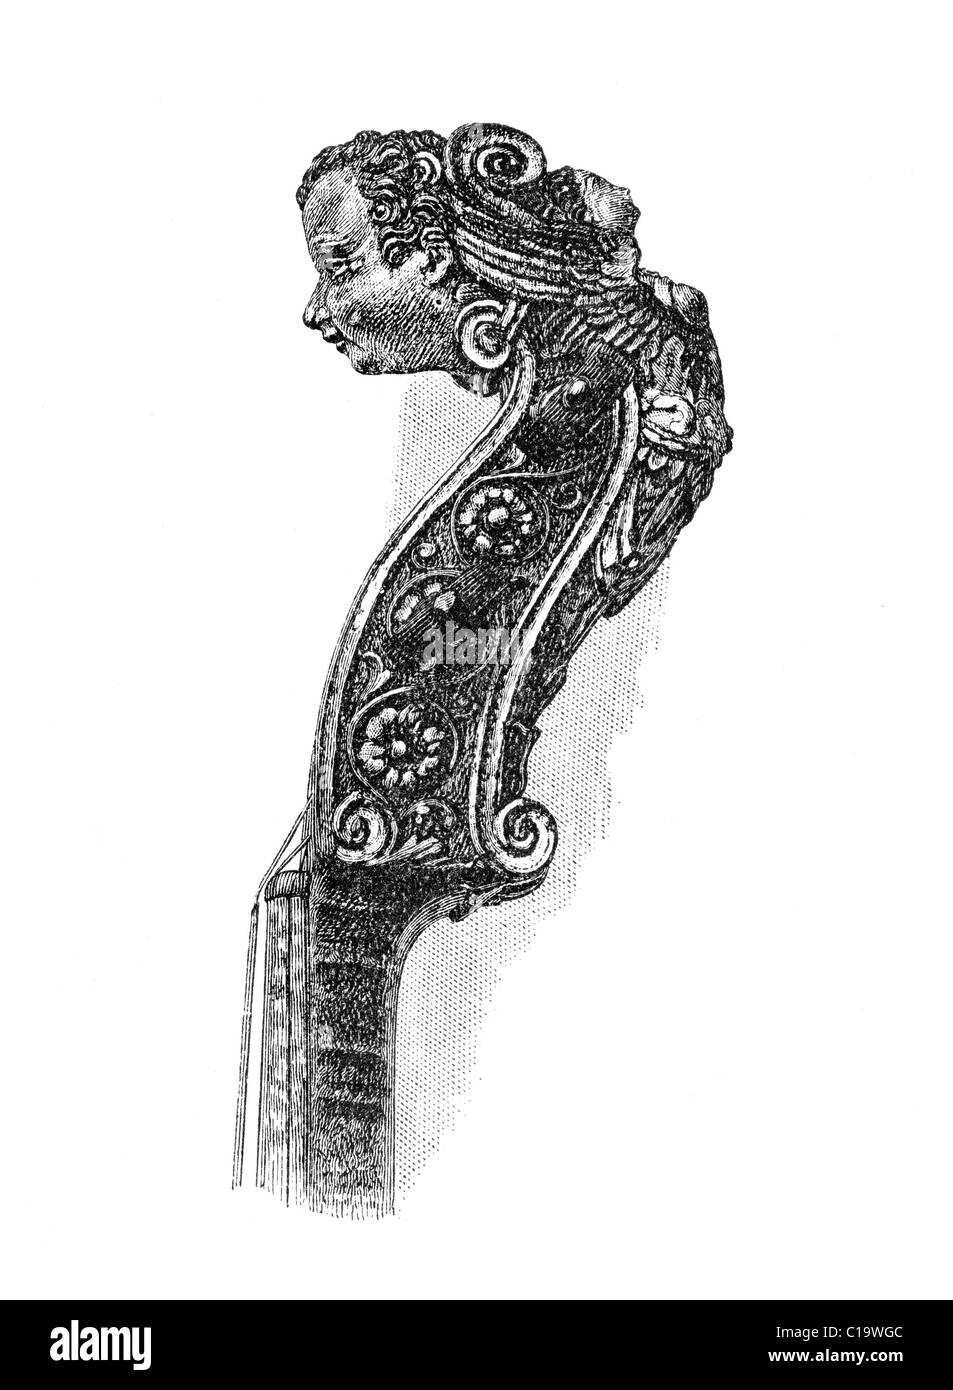 Faites défiler jusqu'au cou et d'Ole Bull's Gaspar Di Salo violon. Publié initialement en janvier 1881 dans le Harper's New Monthly Magazine. Banque D'Images